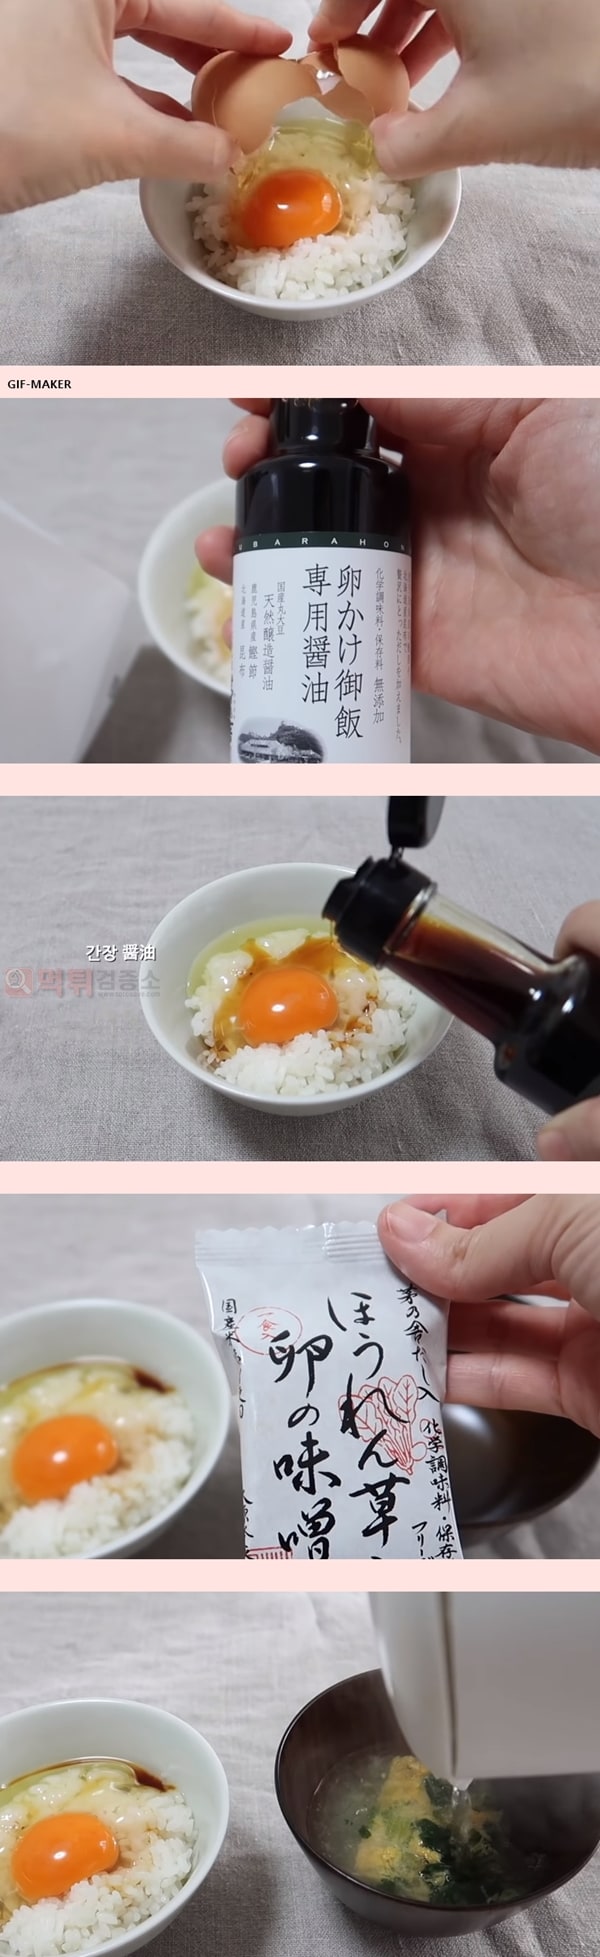 먹튀검증소 유머 한국 간장계란밥,,일본 간장계란밥